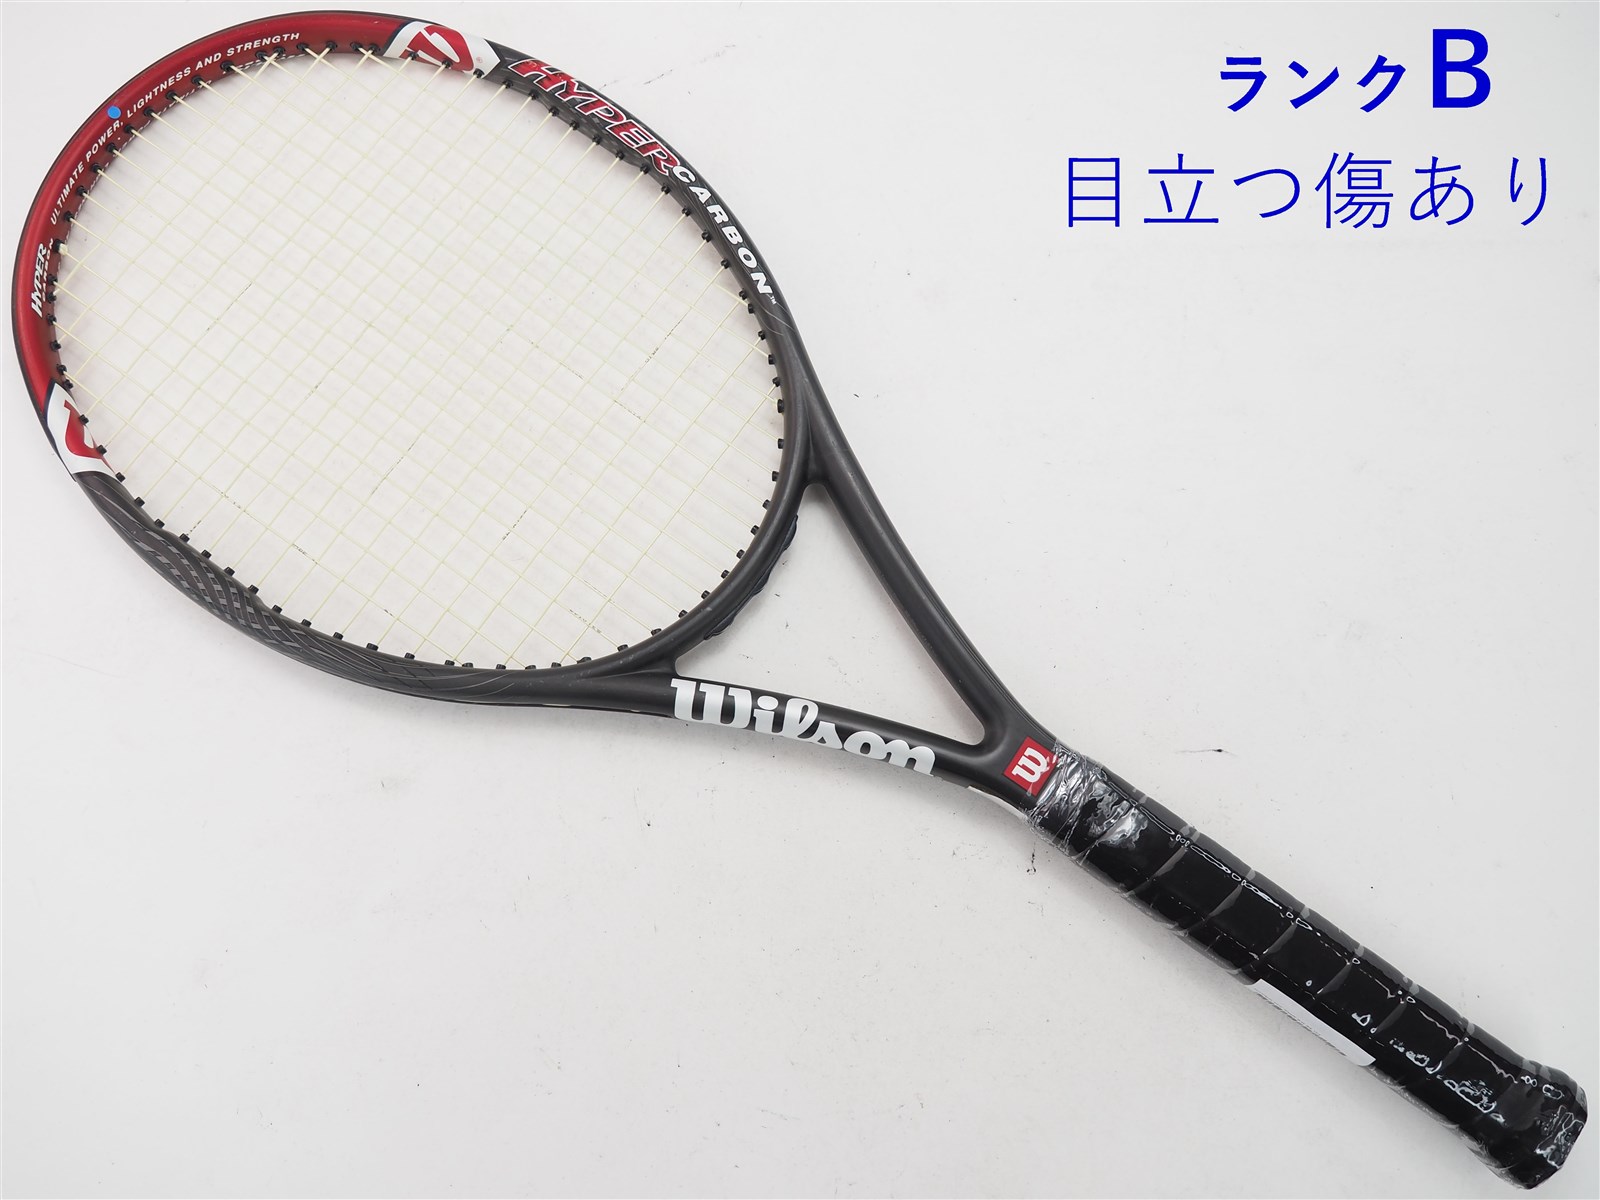 テニスラケット ウィルソン ハイパー プロ スタッフ 5.5 105 (G2)WILSON HYPER Pro Staff 5.5 105